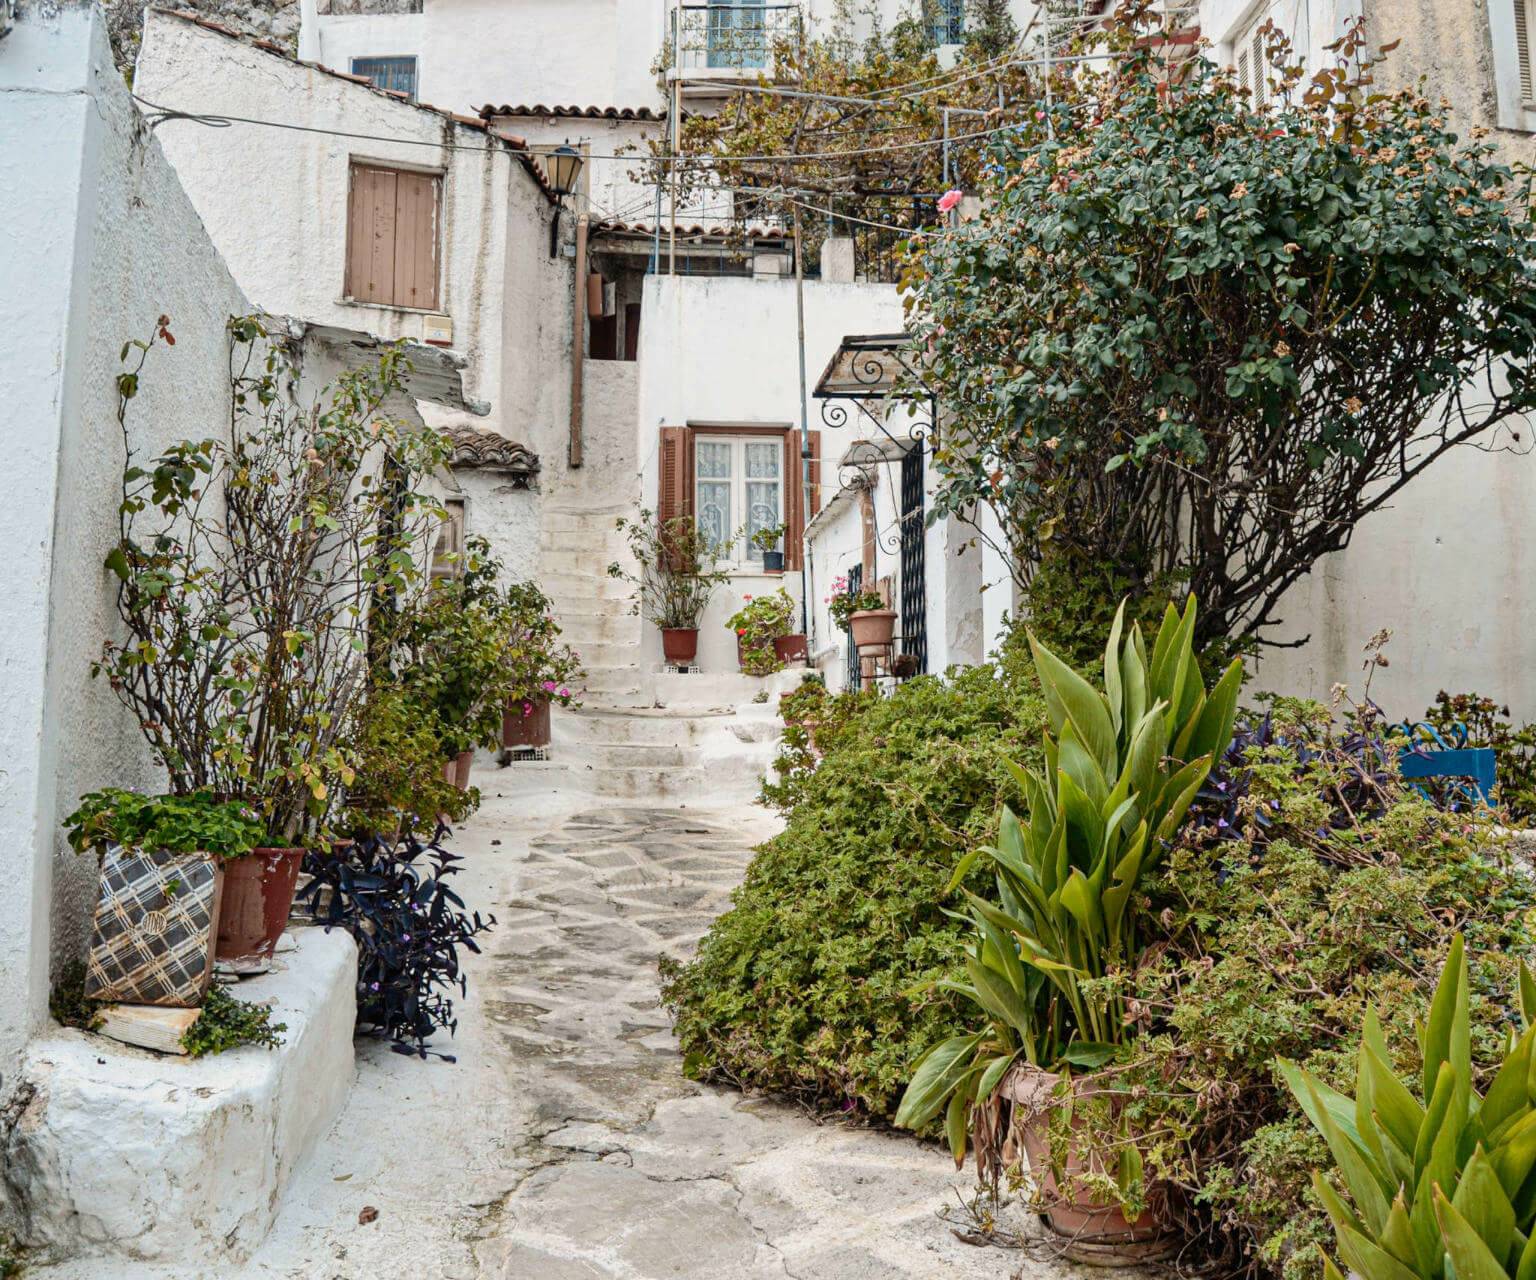 Enge, steile Gasse aus landestypischen, weiß gestrichenen Häusern mit grüner Bepflanzung in Athens Kykladendorf Anafiotika.